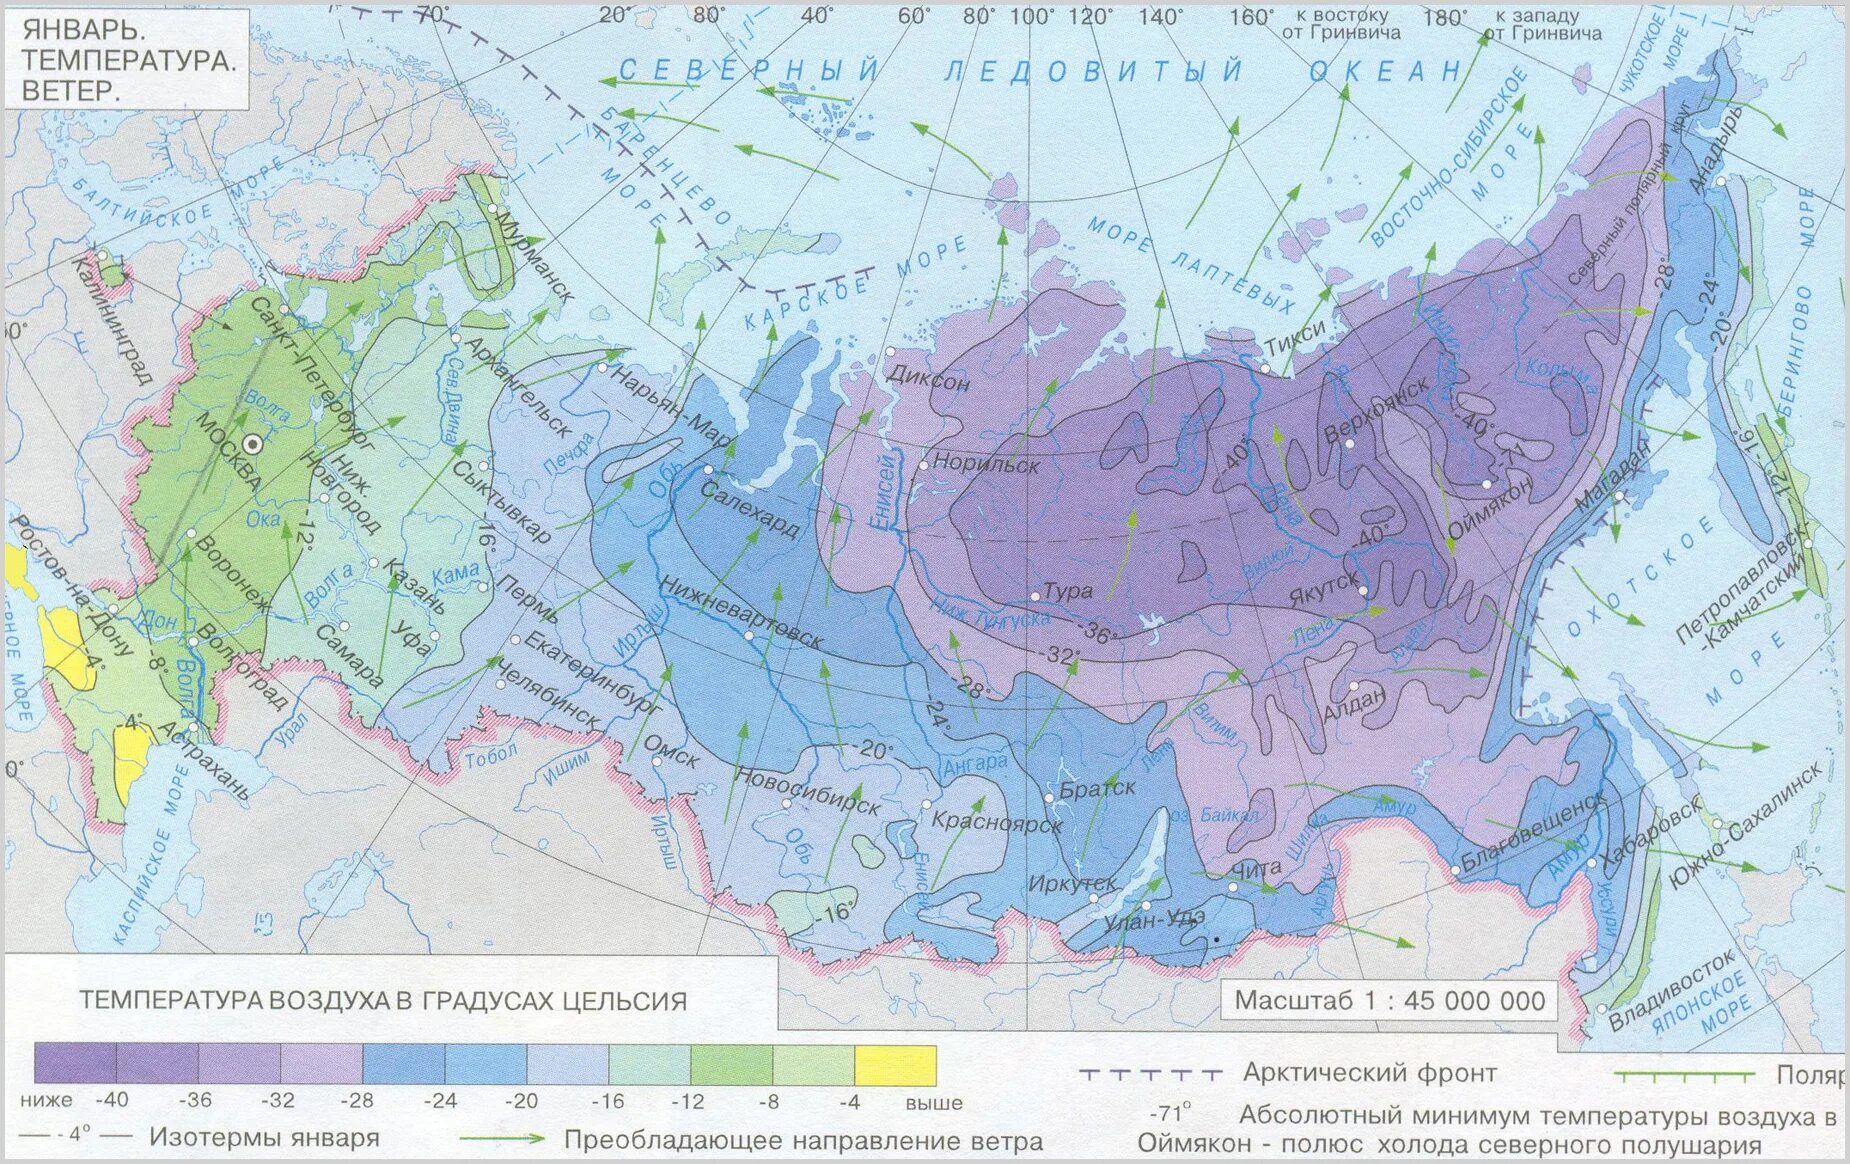 Температура на востоке россии. Карта средних температур России в январе. Карта средней температуры России в январе. Средняя температура воздуха в январе карта России. Карта средних температур января и июля в России.